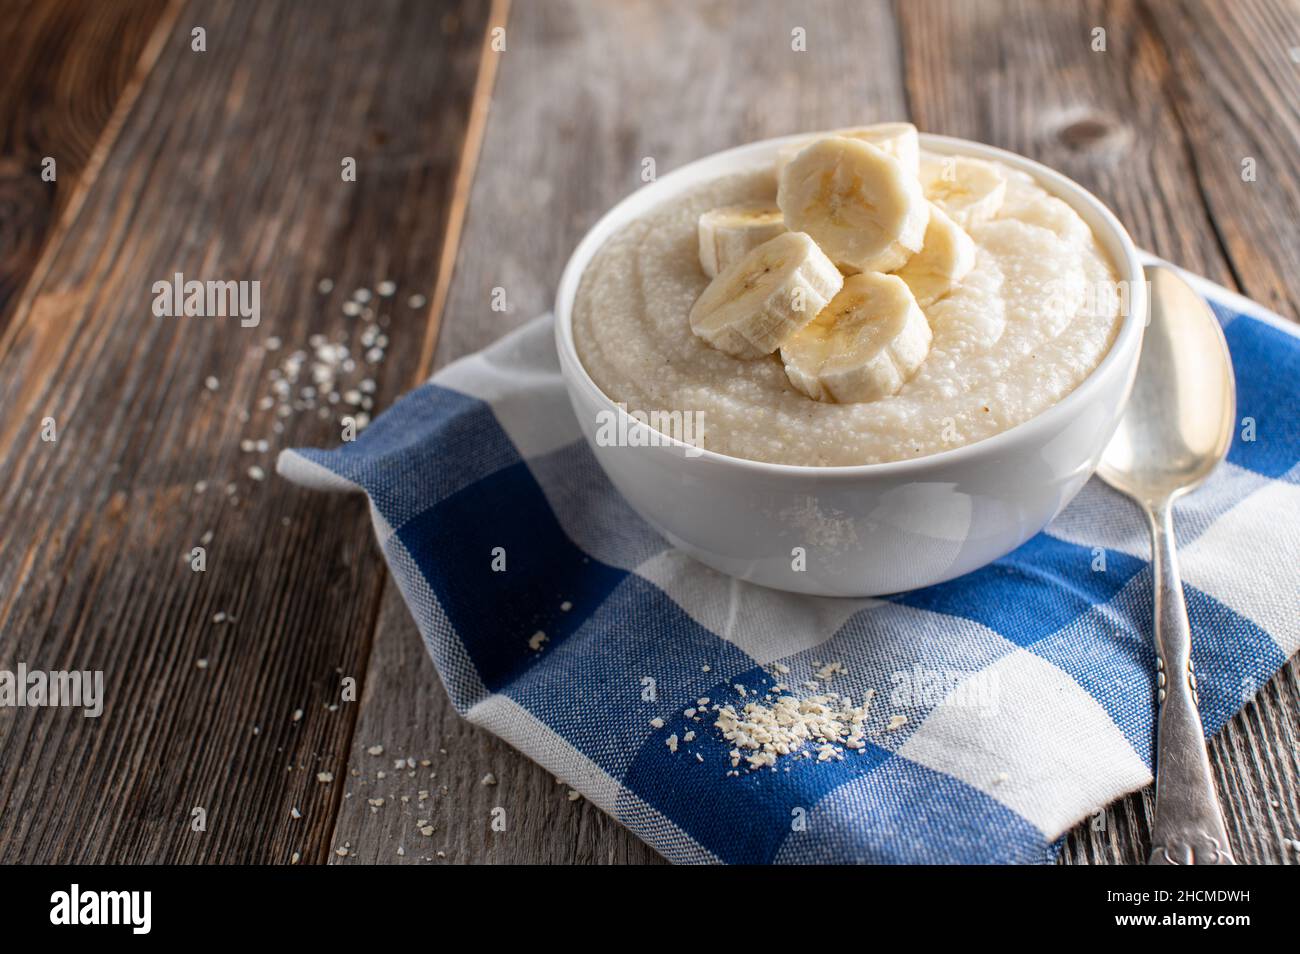 Recipiente per la colazione leggero con un porridge di miglio cucinato fresco servito con banani freschi isolati su tavola di legno con cucchiaio Foto Stock